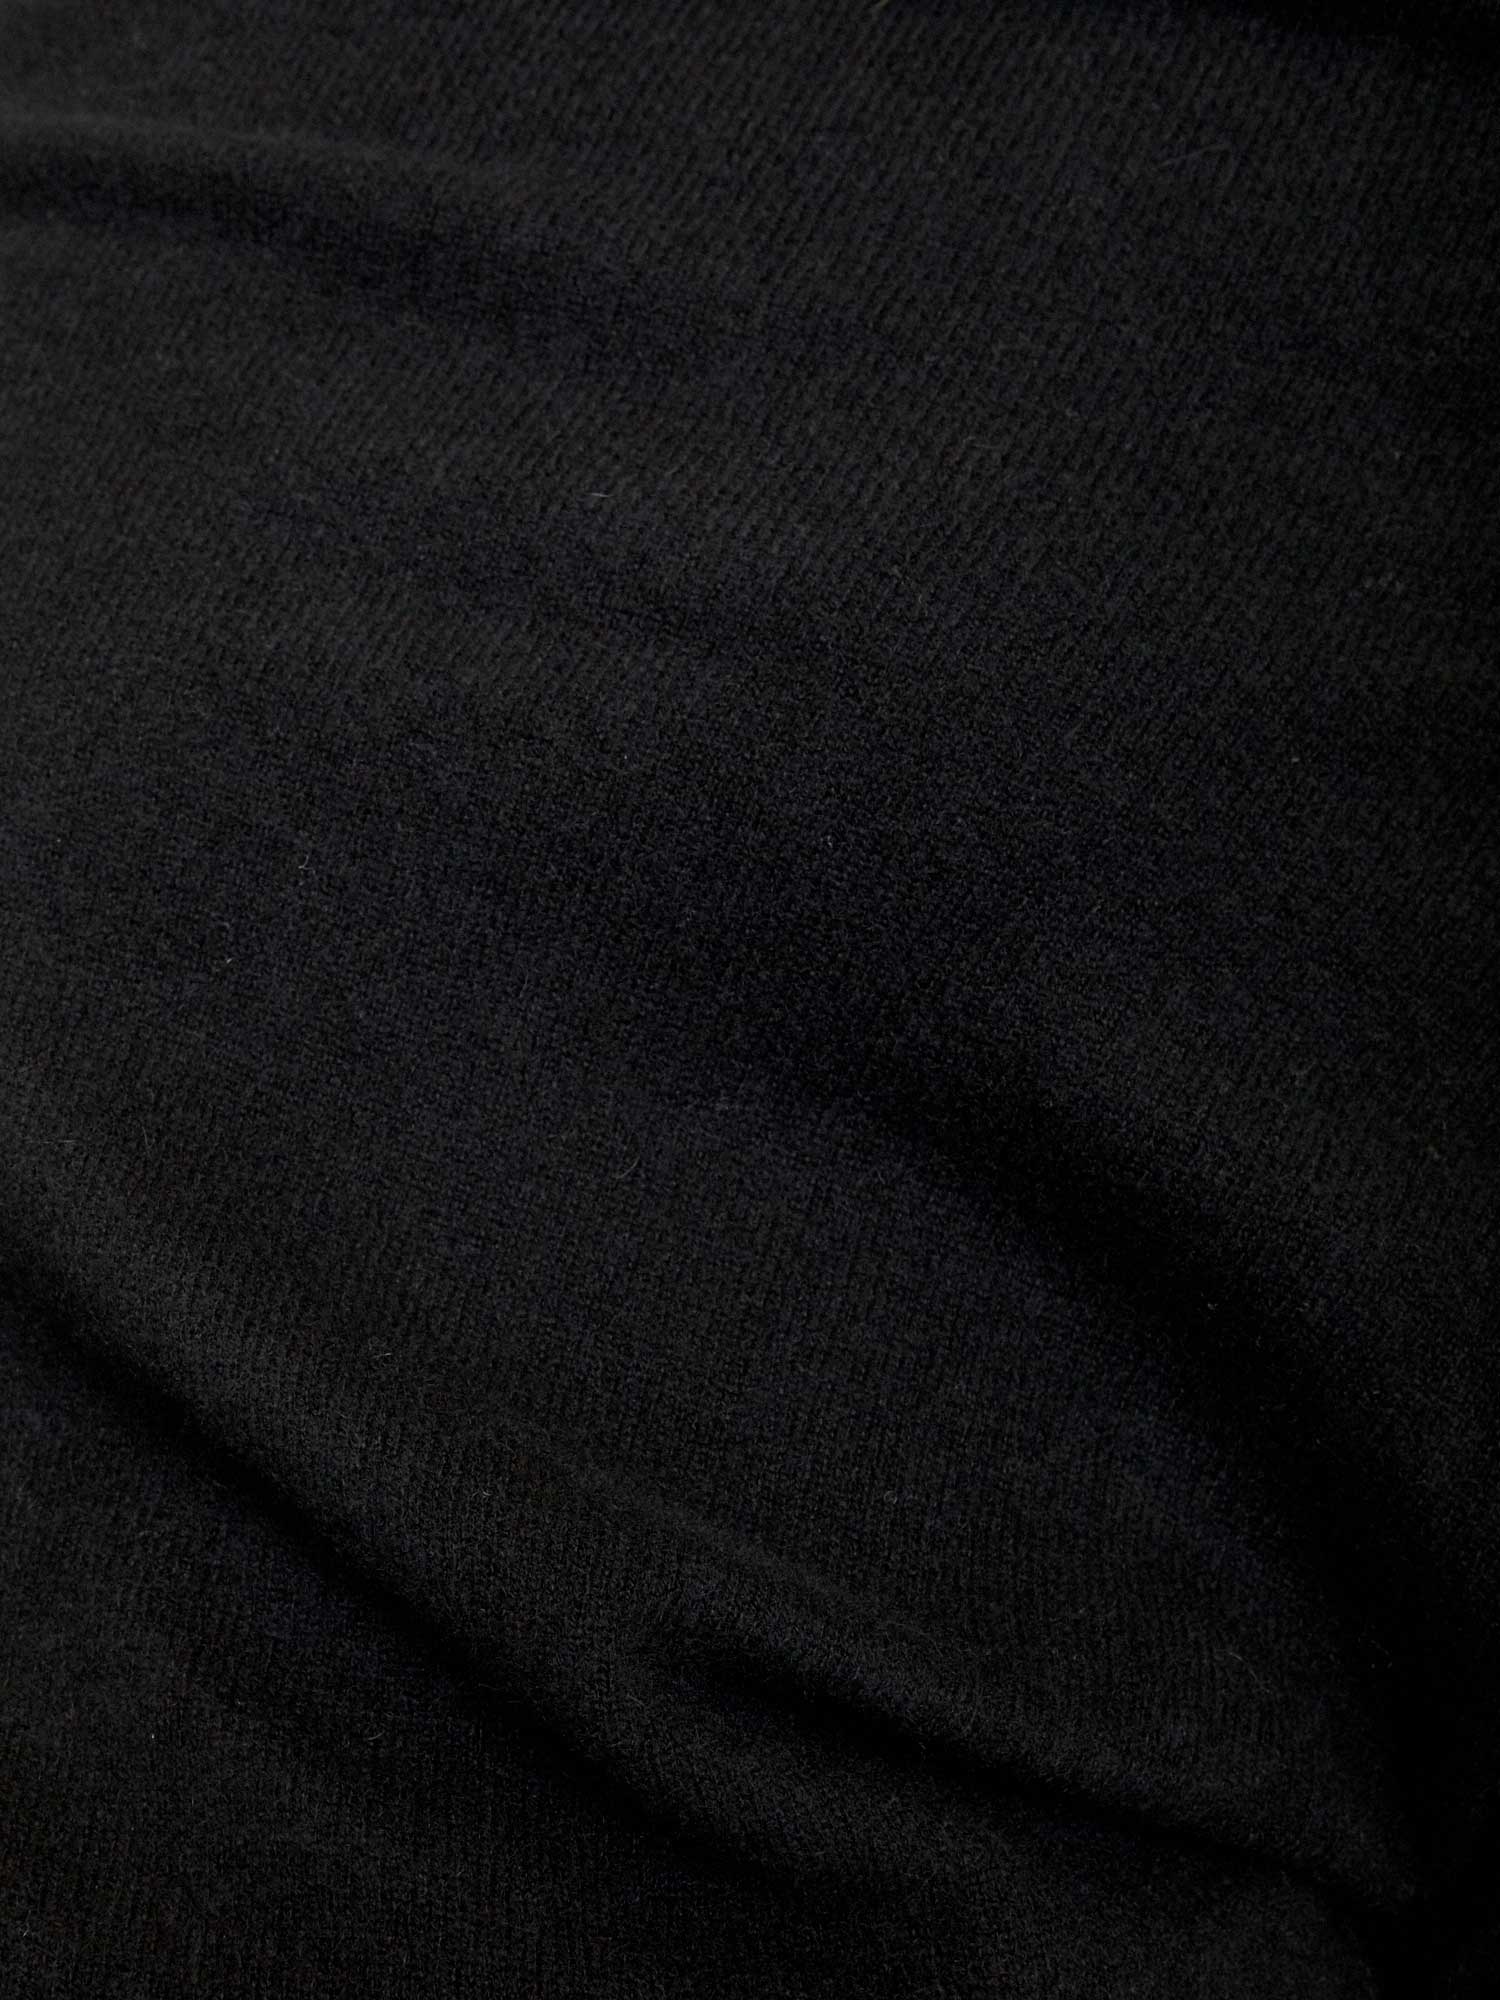 Lori cashmere off shoulder black sweater close up 2